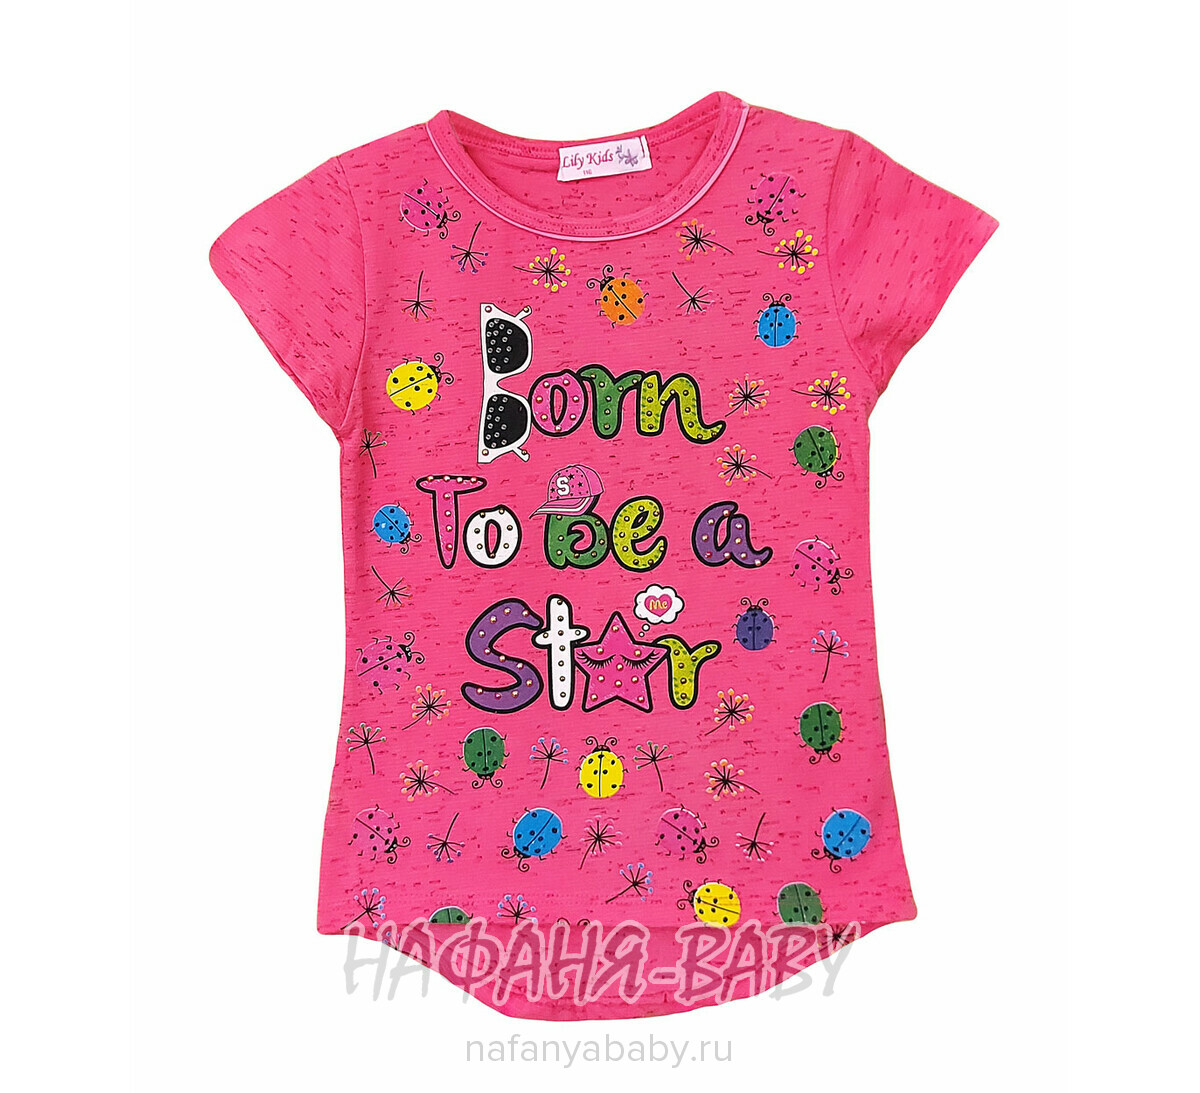 Детская футболка LILY Kids, купить в интернет магазине Нафаня. арт: 3500.